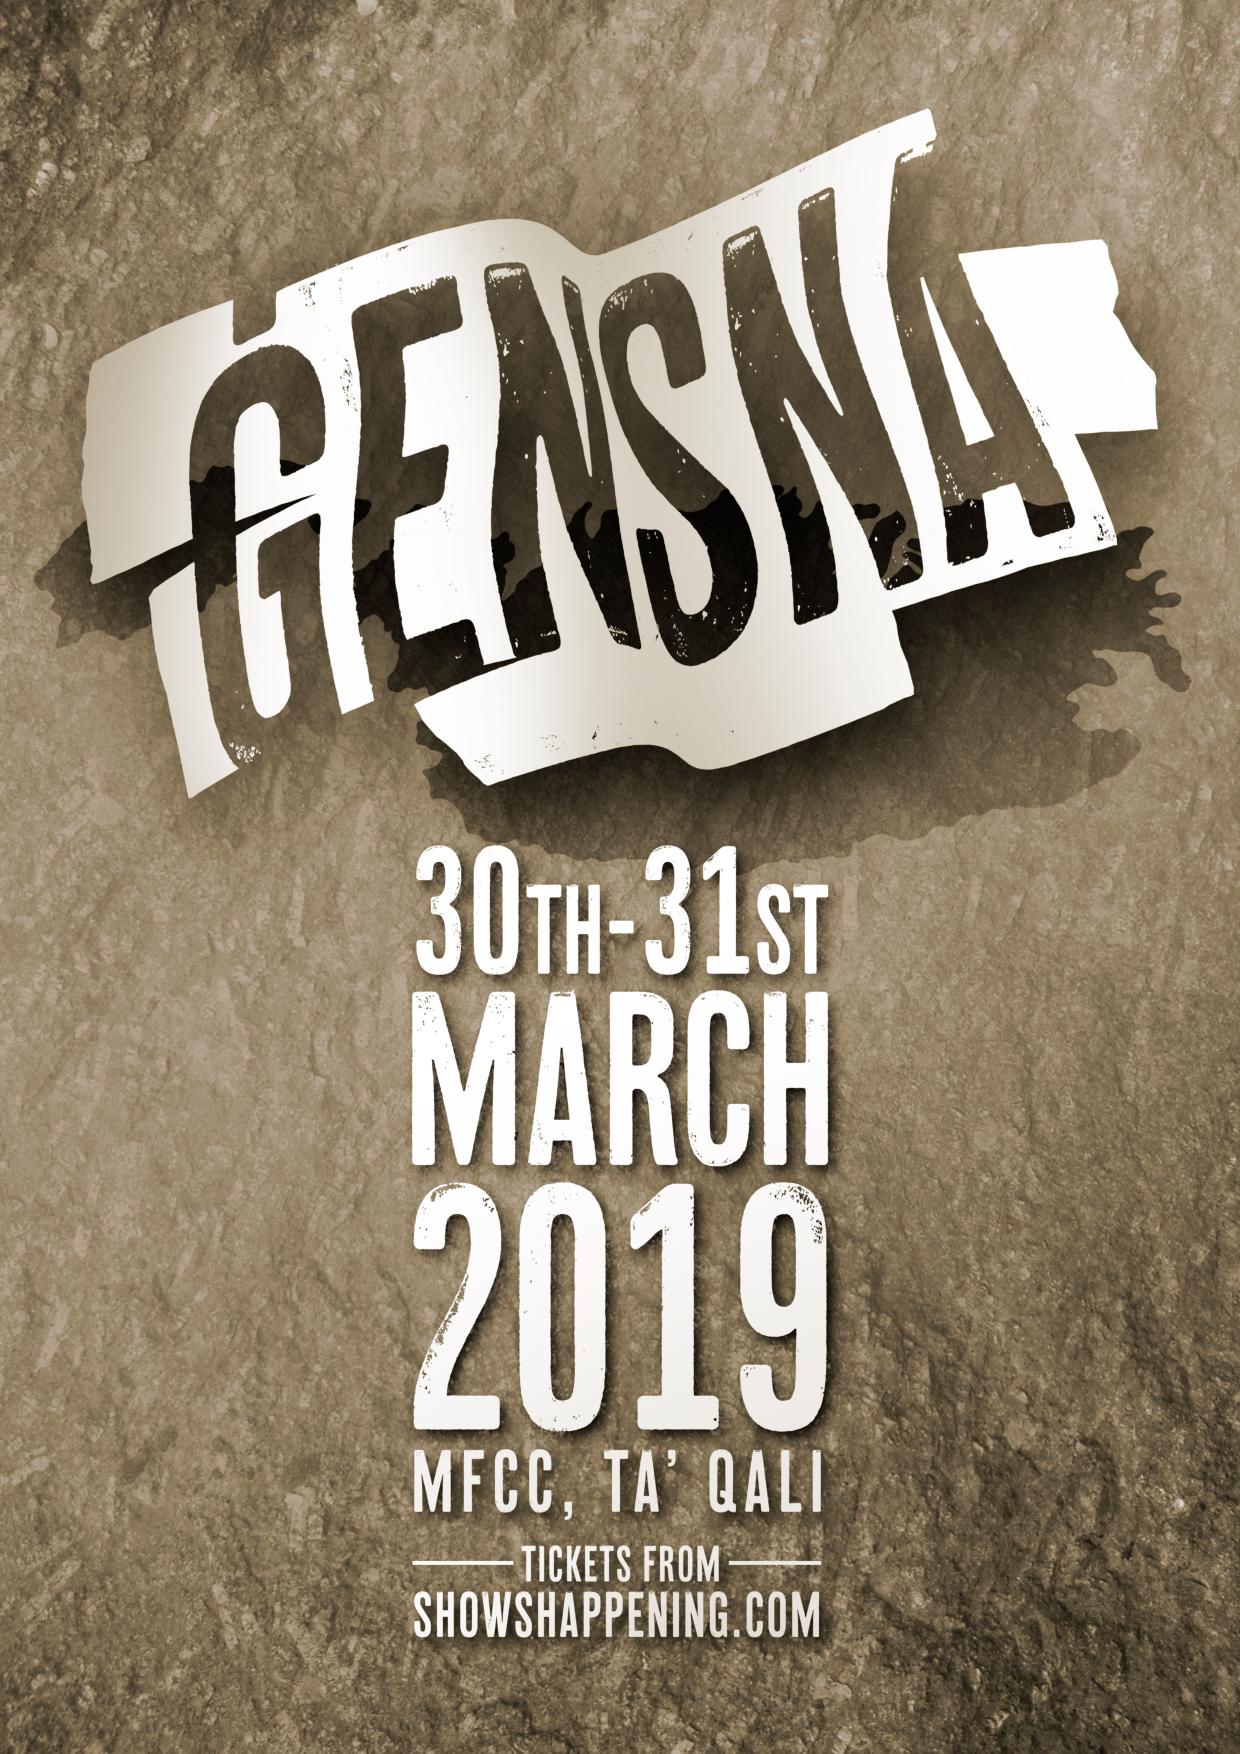 Gensna 2019 poster